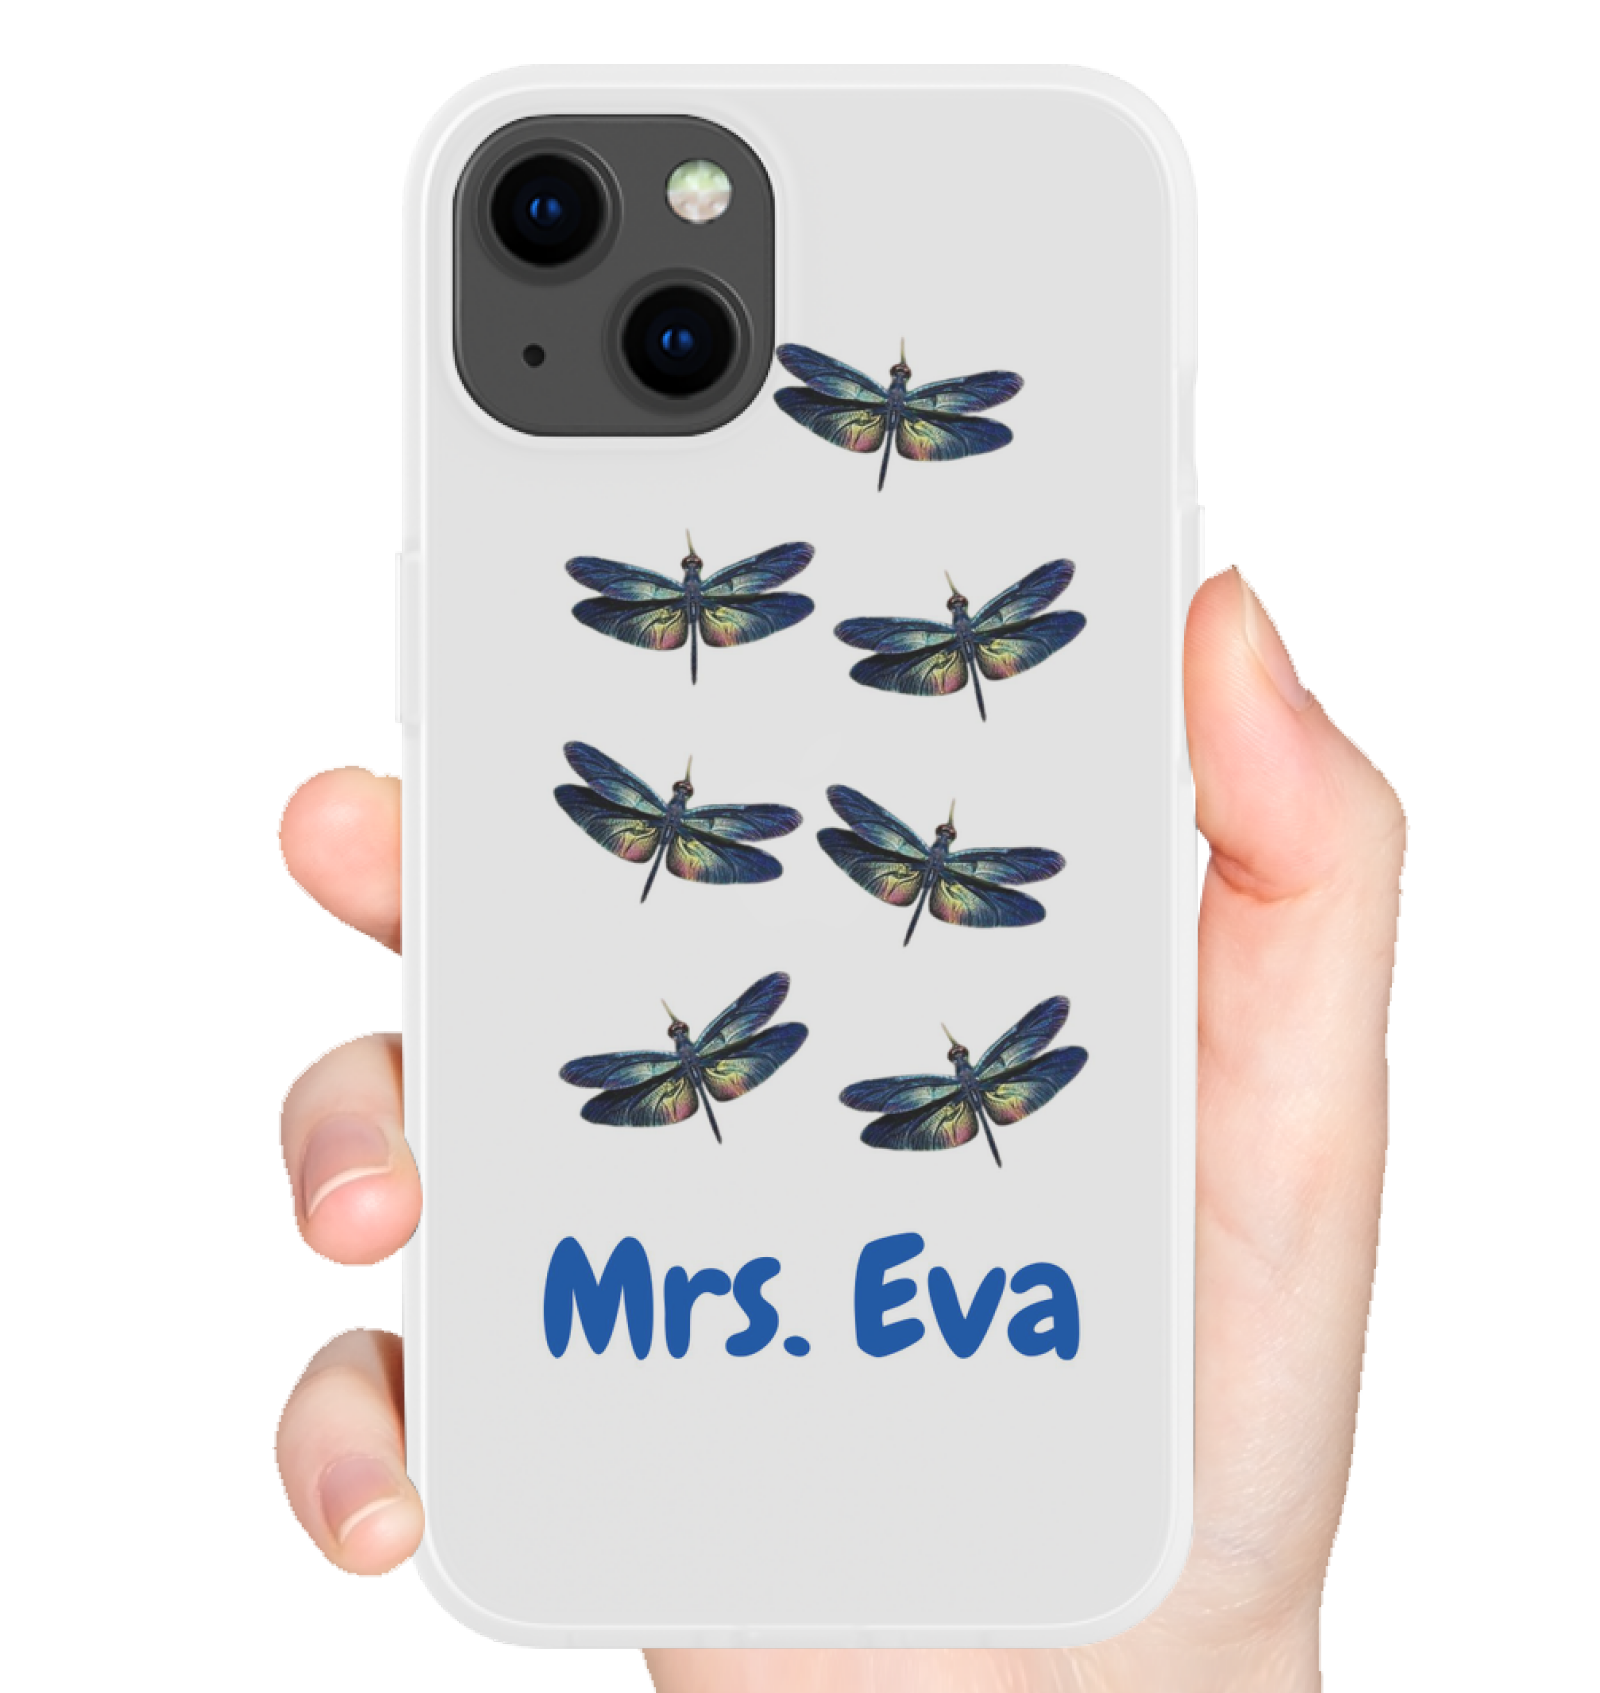 Mrs. Eva Phone Case